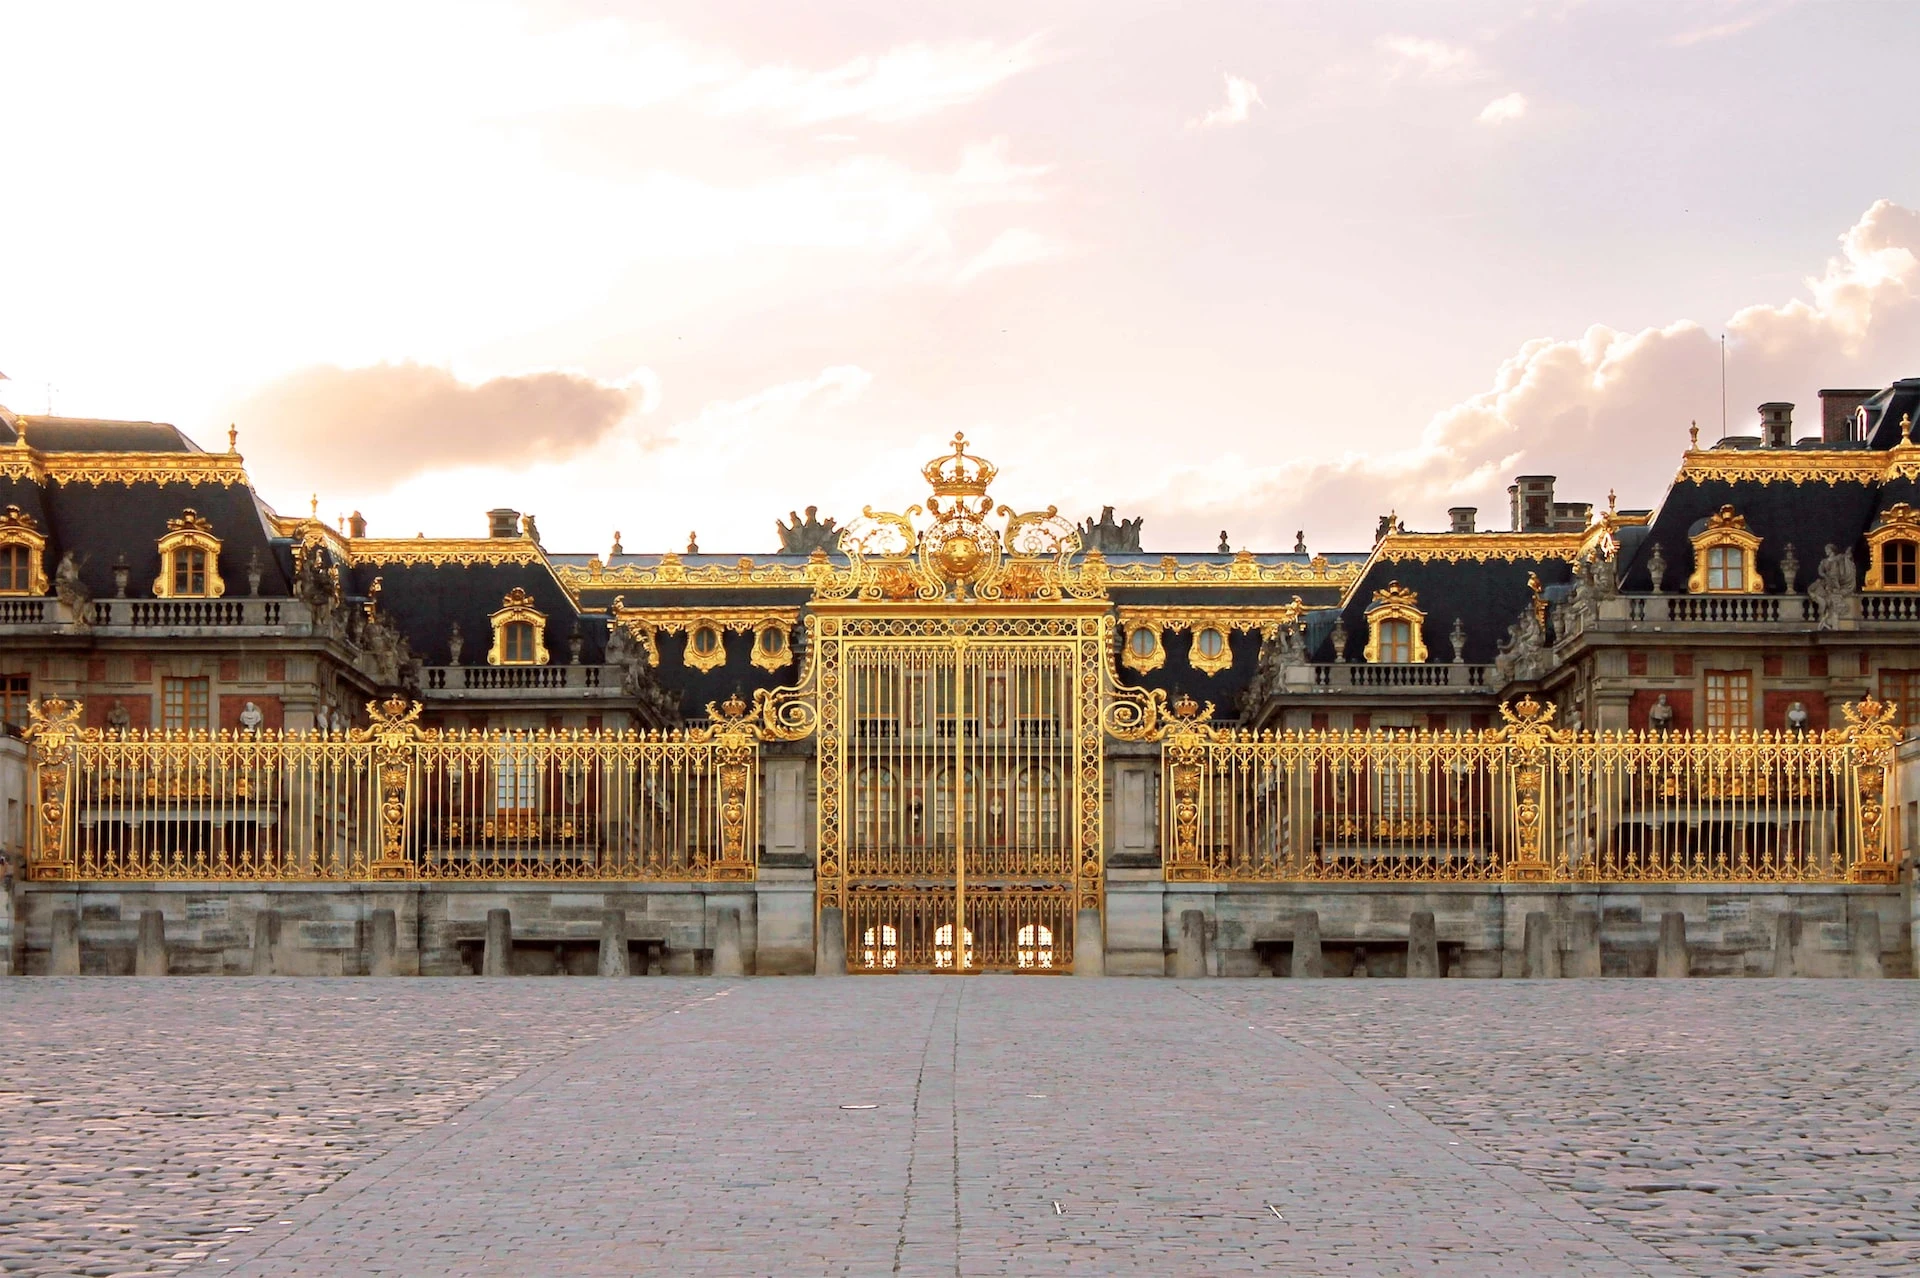 Le château de Versailles est un site olympique PARIS 2024 / Photo choisie par monsieurdefrance.com : jessica-kantak-bailey via unsplash.com 